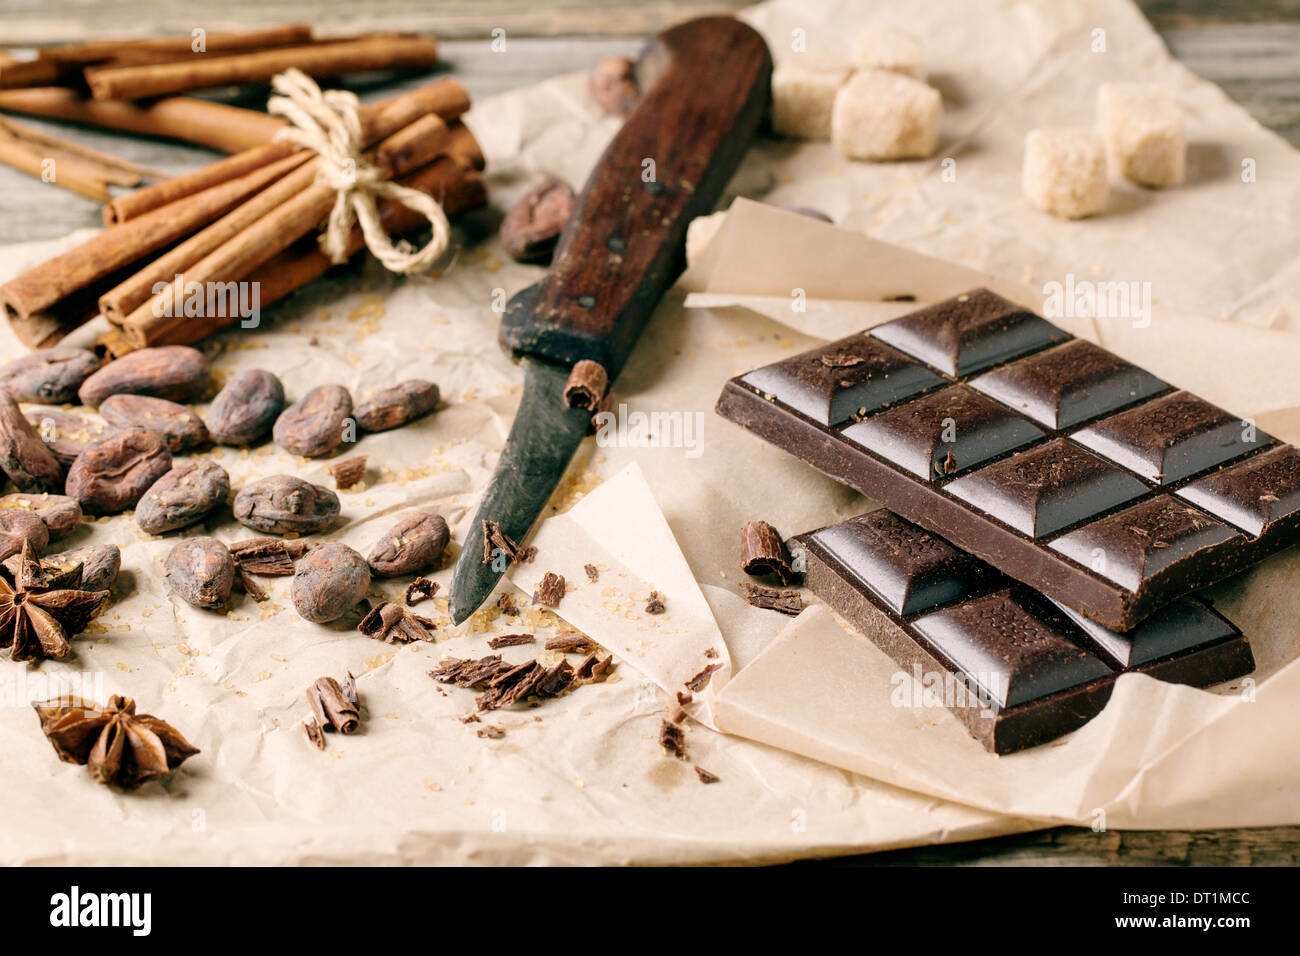 Dunkle Schokolade mit altes Messer, Kakao, Zimt und Anis auf zerknittertes Papier über Holz Hintergrund. Serien ansehen Stockfoto